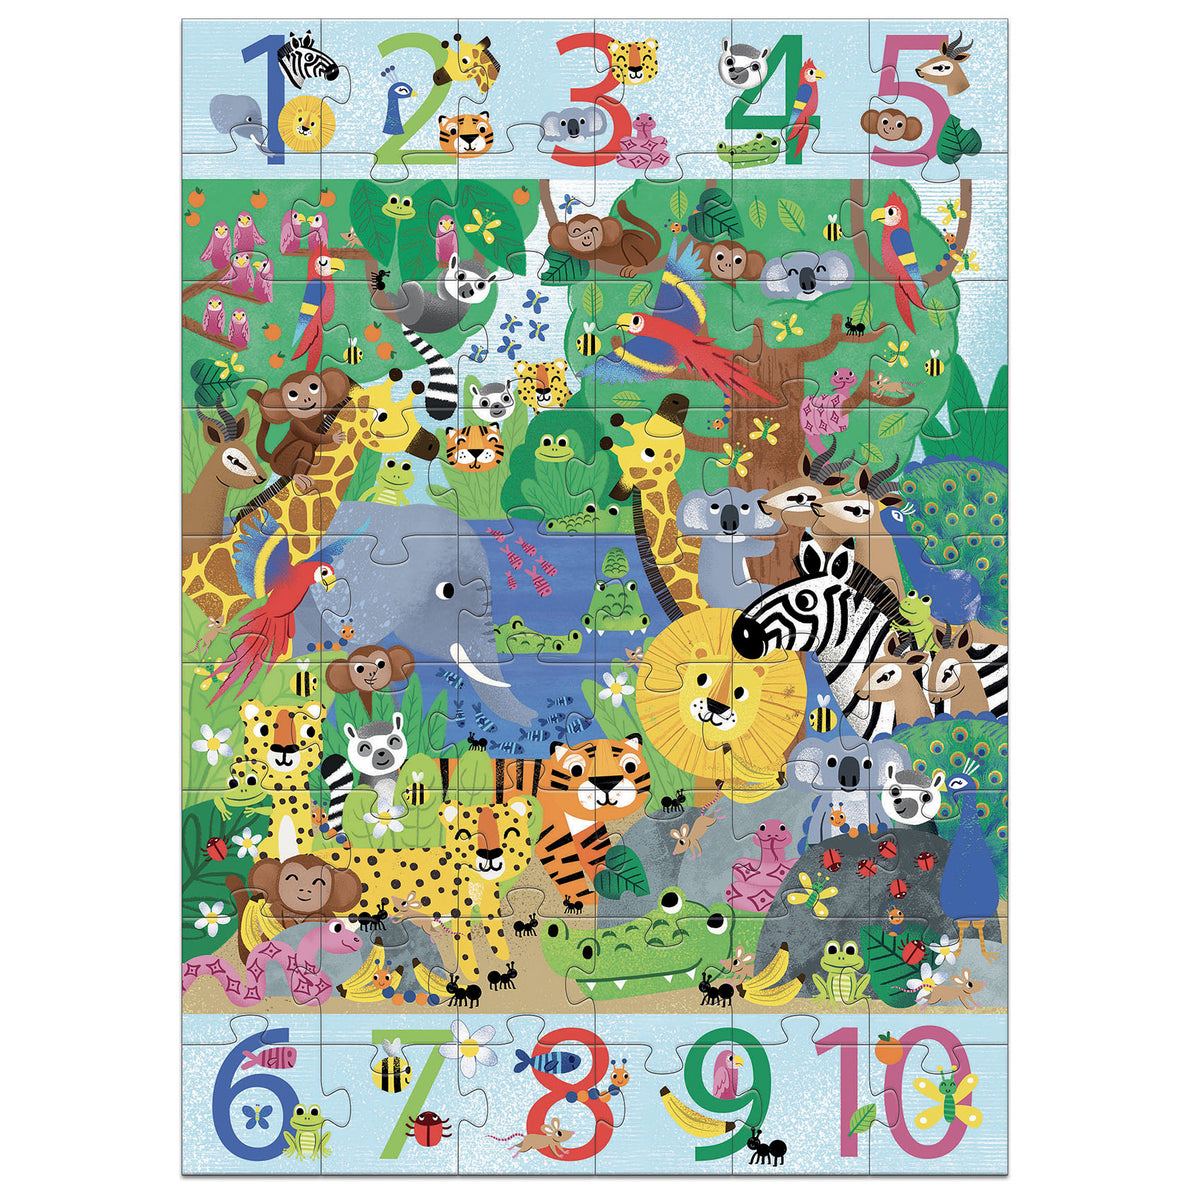 Puzzle Jungle von Djeco  3 in 1: ein Puzzle, ein Such- und Findespiel und ein Spiel, um das Zählen von 1 bis 10 zu erlernen.  Ein Riesen-Puzzle, aber das ist längst noch nicht alles! Nach dem Aufbau des Puzzles entdeckt das Kind ein Such- und Findespiel, bei dem es die auf dem Rand abgebildeten Elemente in den angegebenen Mengen finden muss. Ein Puzzle, ein Beobachtungsspiel und erste Erfahrungen mit dem Zählen.